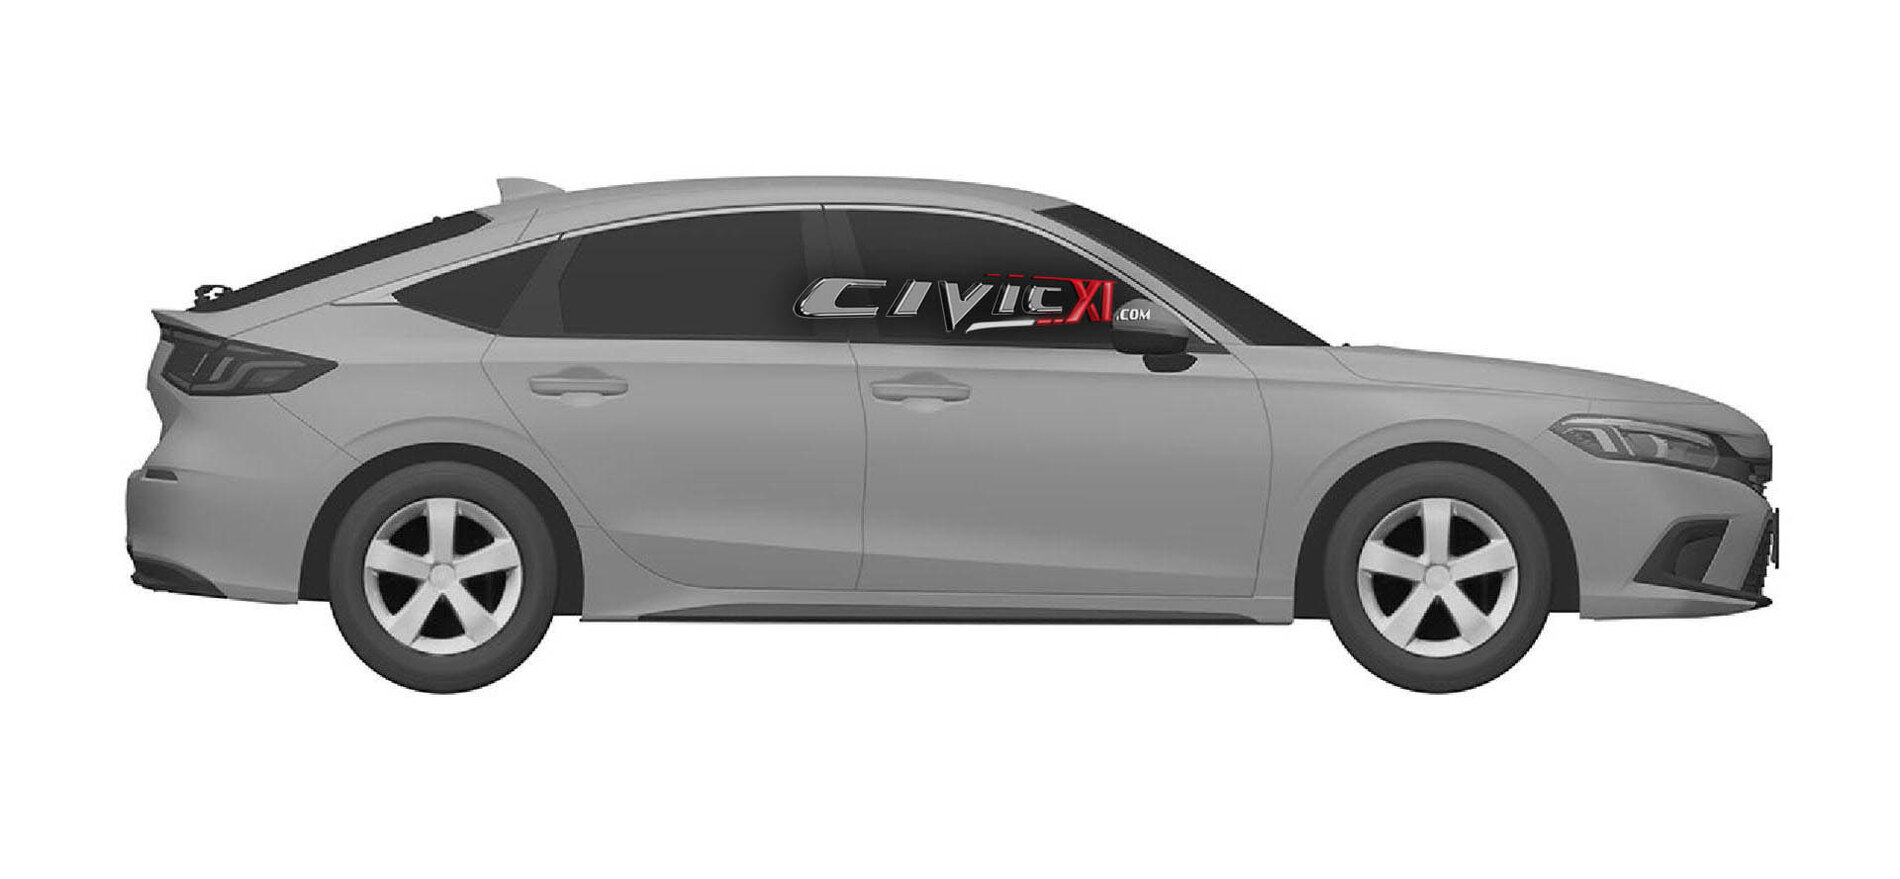 Honda Civic 2021_Patentes_Civicxi forum (4)